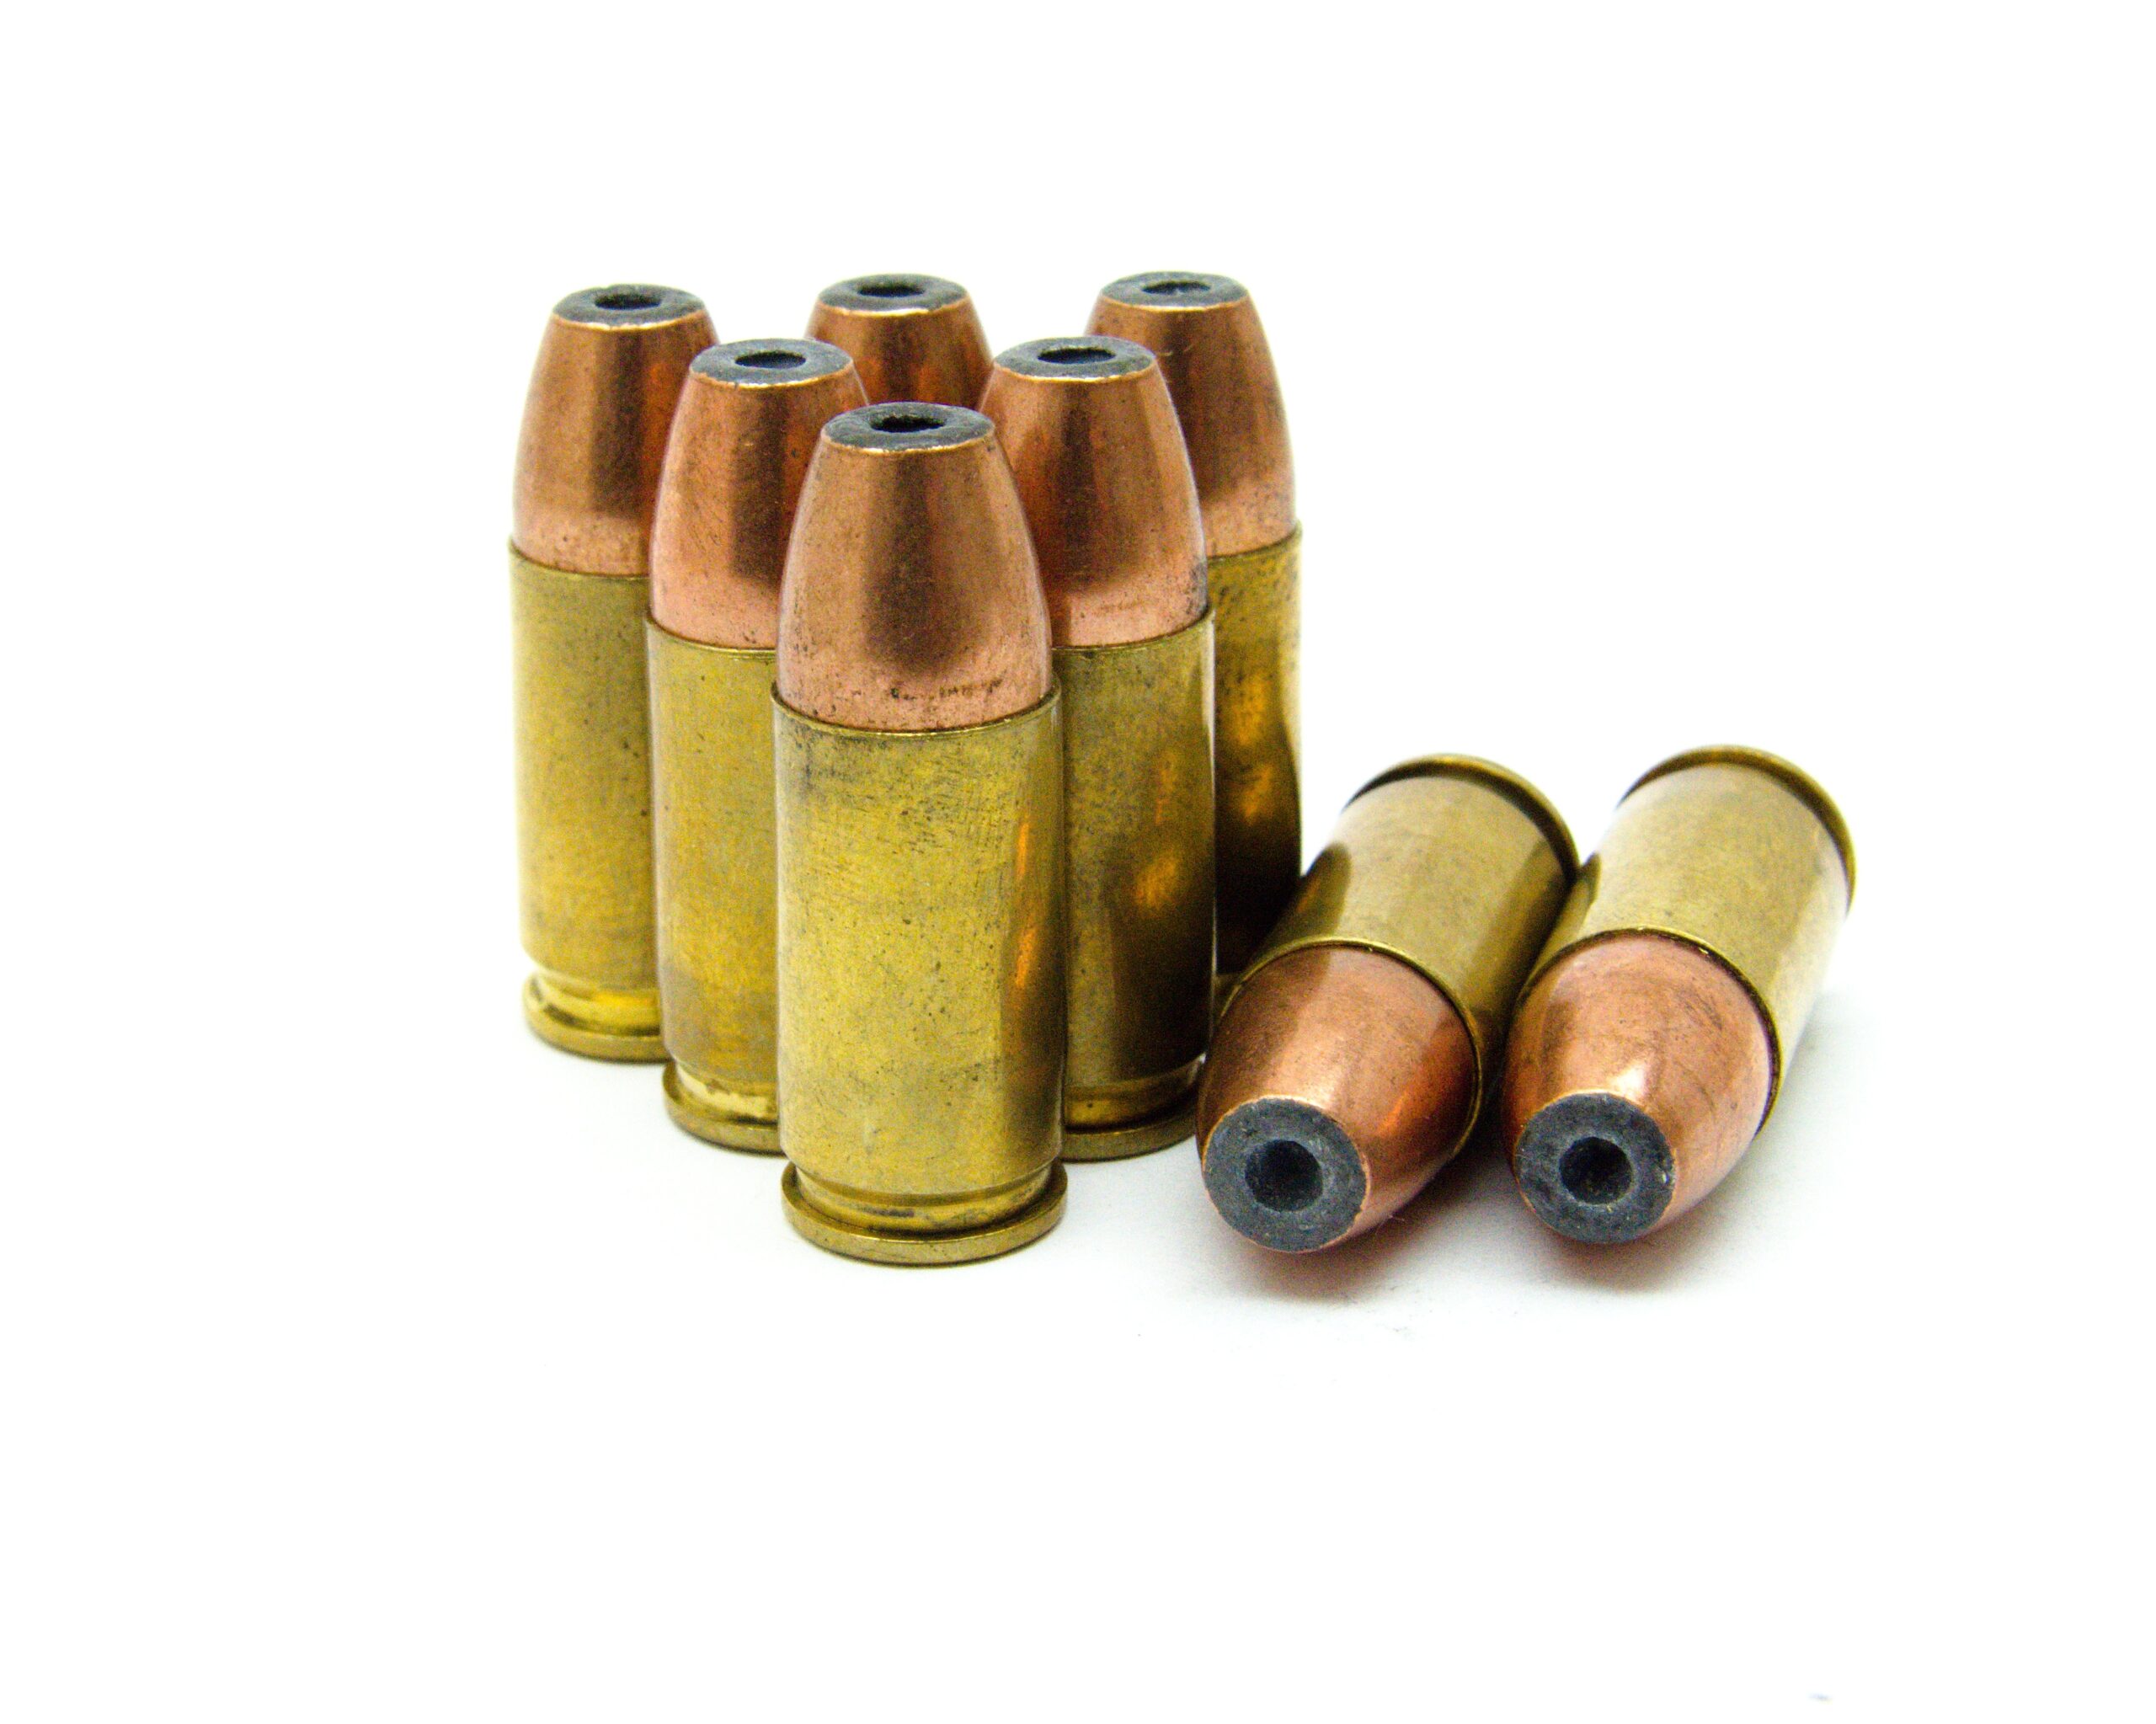 special 9mm ammunition